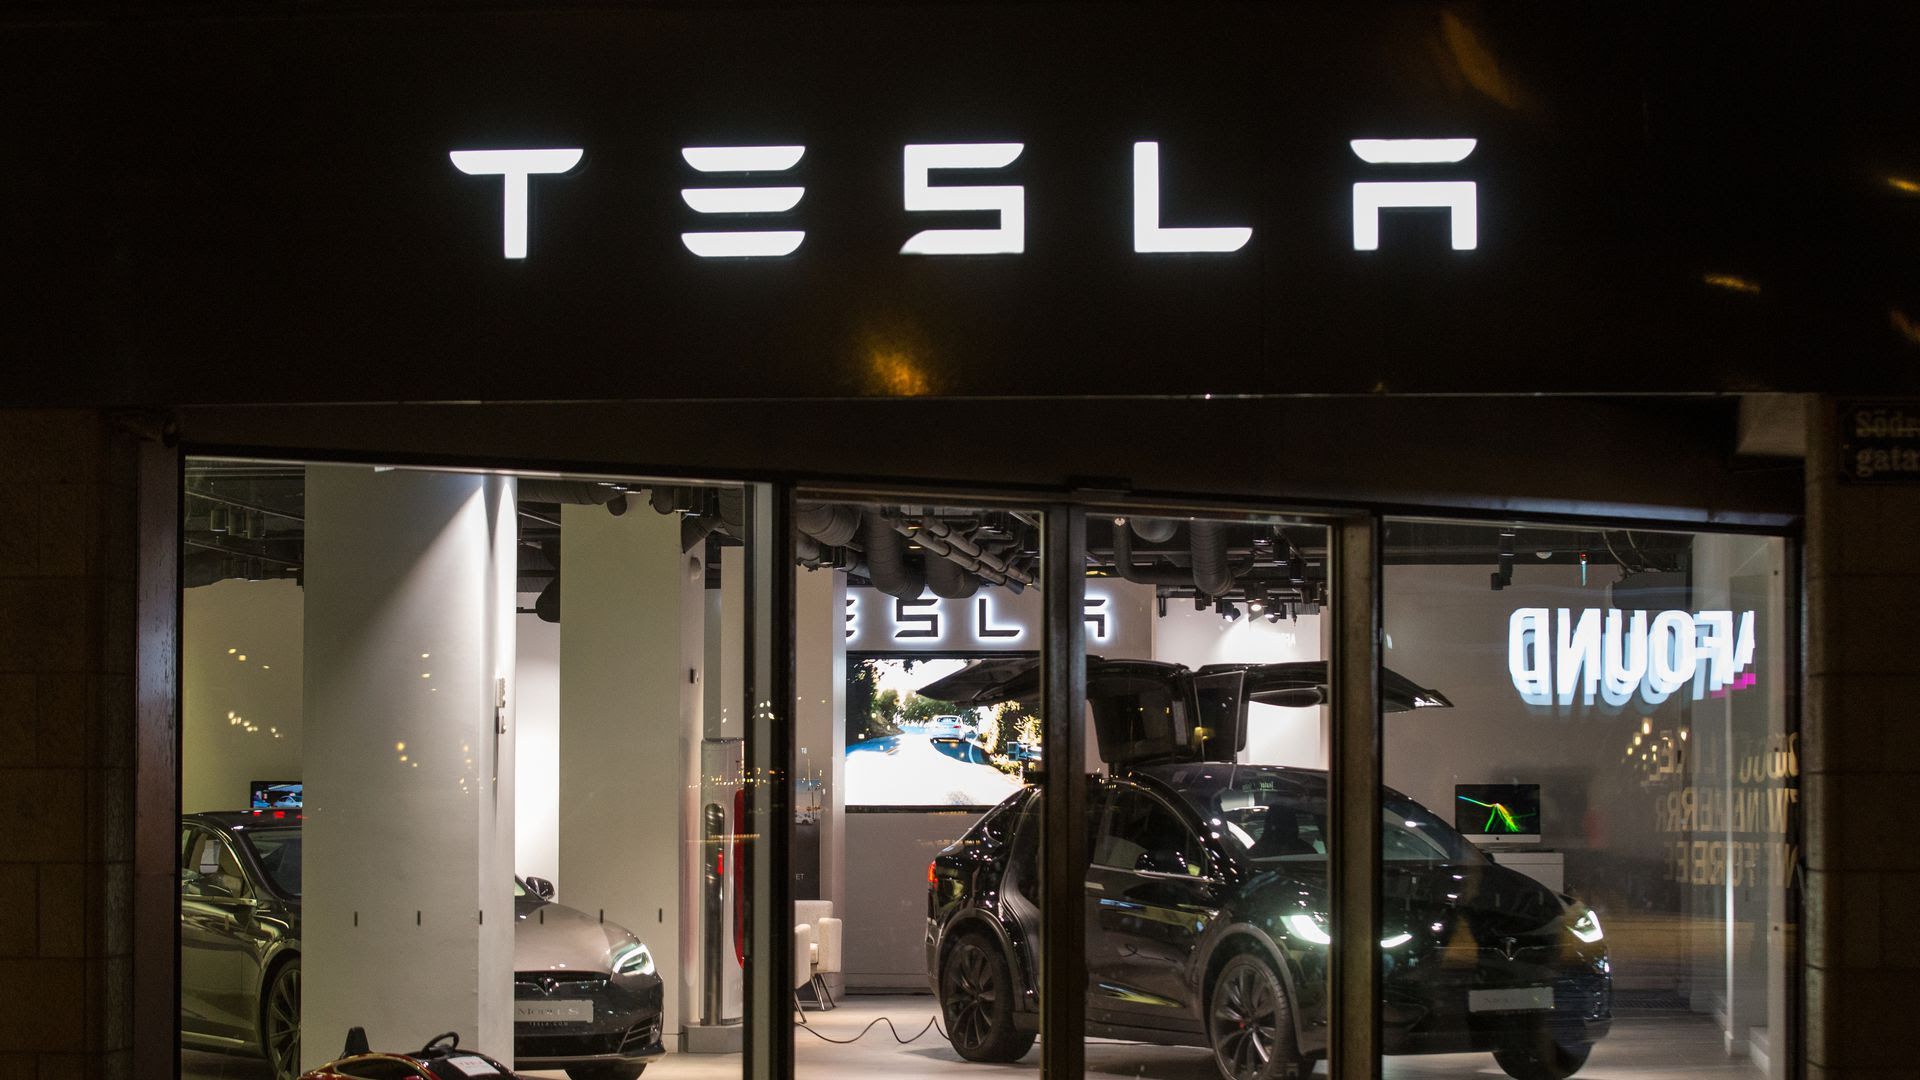 A Tesla care store